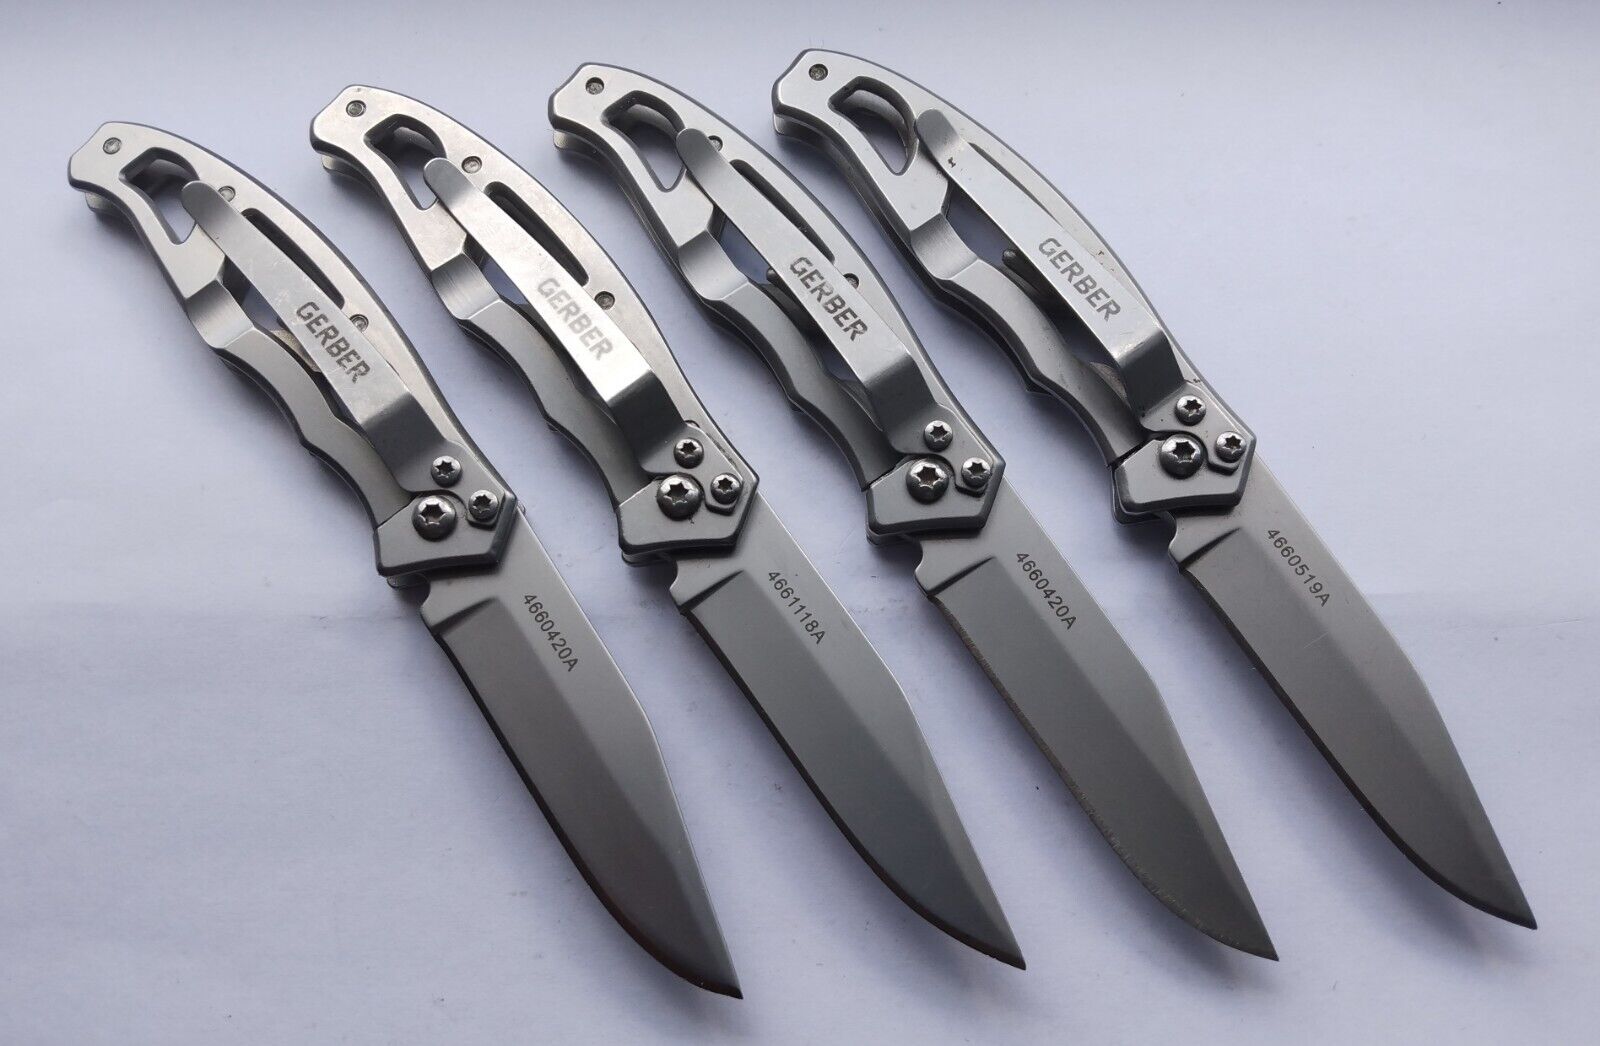 Lot of 4 Gerber Mini Paraframe Pocket Knives, Plain Edge [0133]